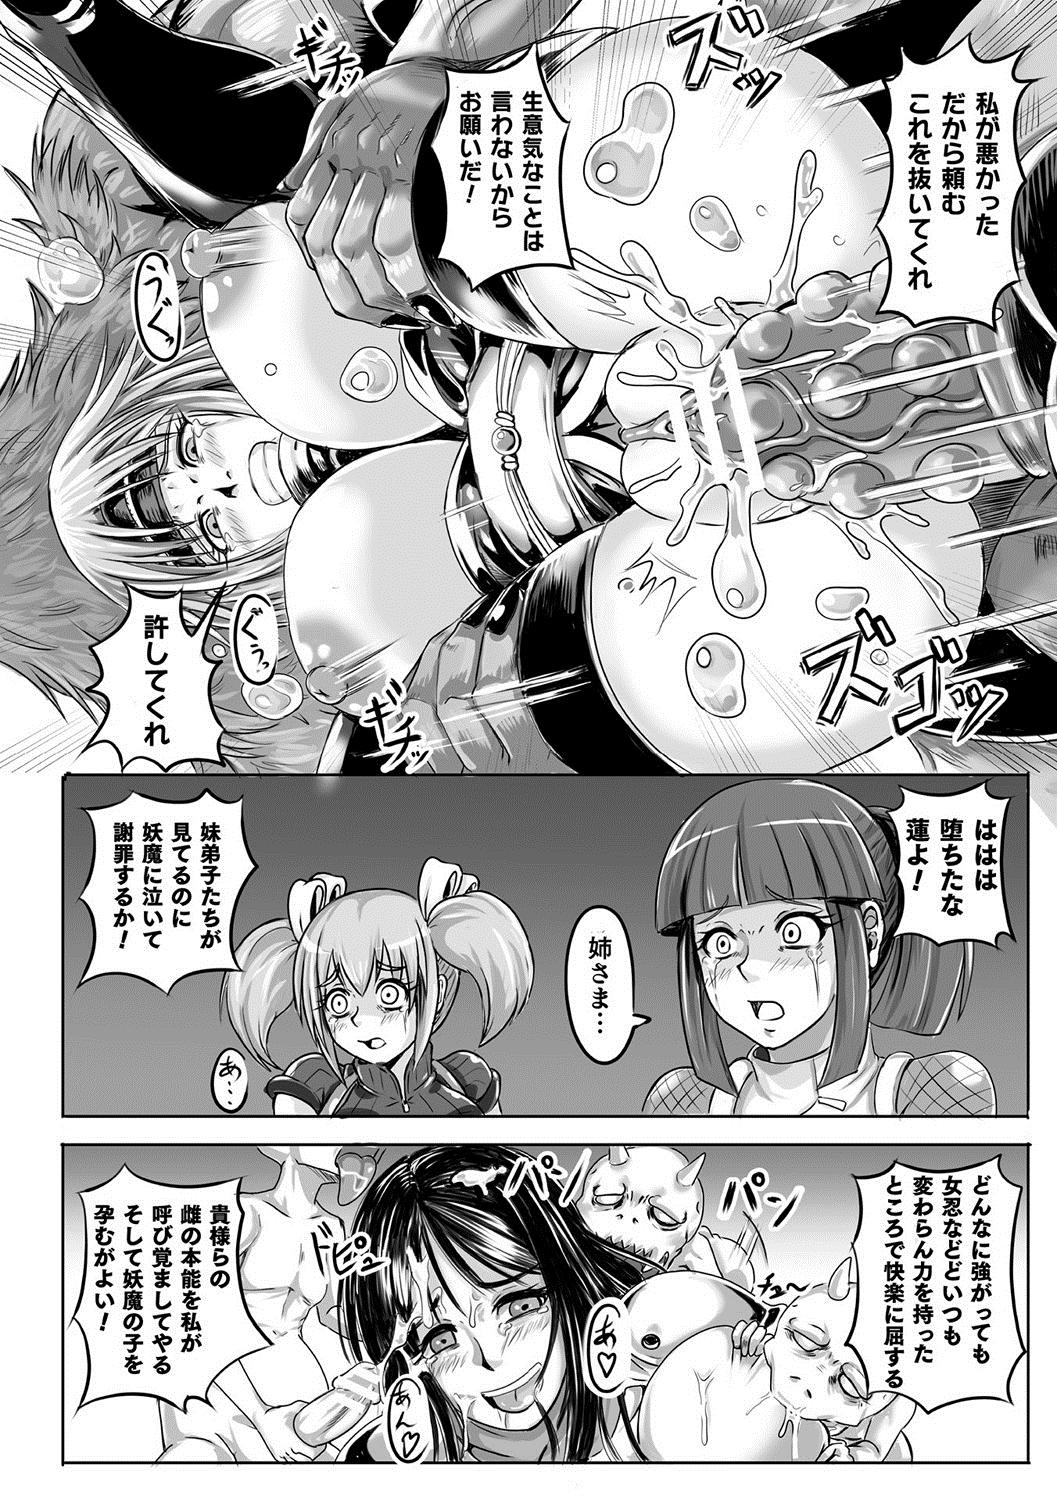 Bessatsu Comic Unreal Ningen Bokujou Hen Vol. 10 63